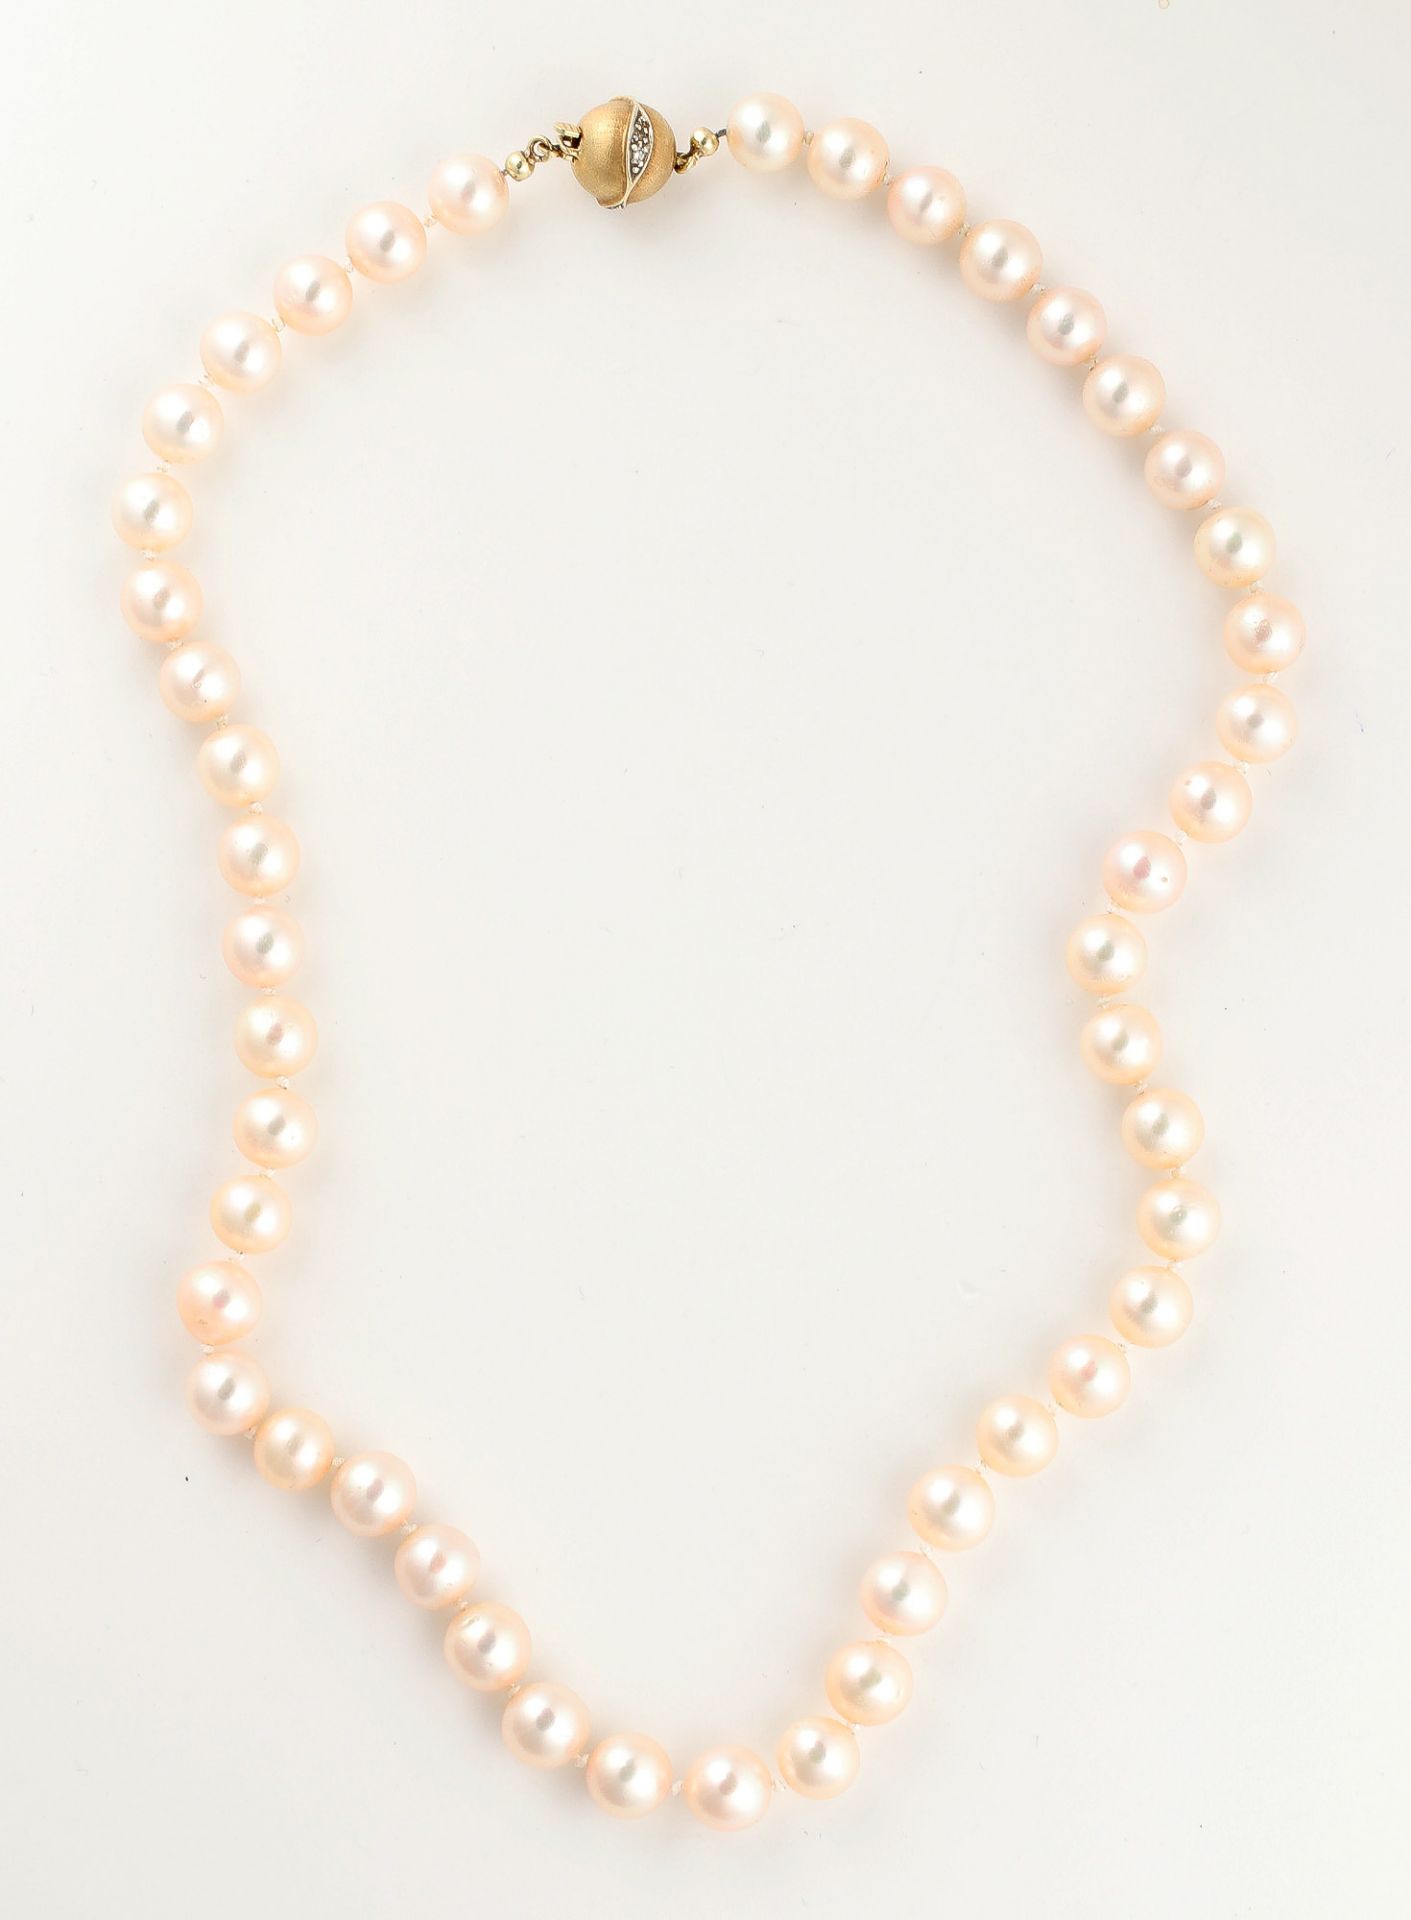 Zuchtperlcollier, aus 48 Perlen